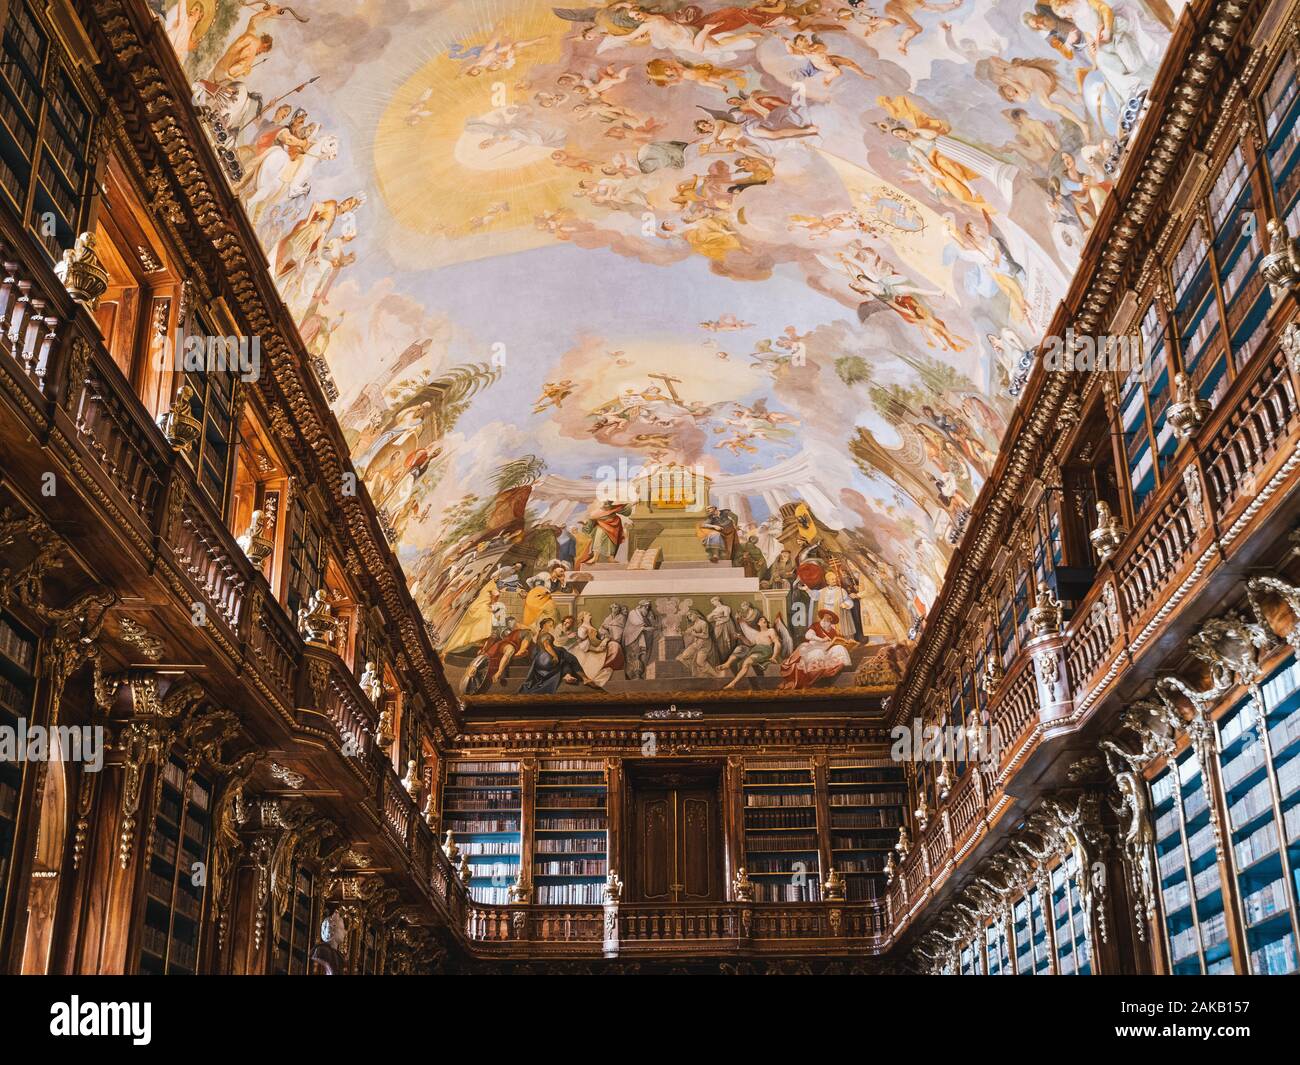 Praga, República Checa - 8 de junio 2019: el interior del Monasterio Strahov Biblioteca, Sala de filosofía, techo Fresco 'Mankind la búsqueda de la verdadera sabiduría" pai Foto de stock